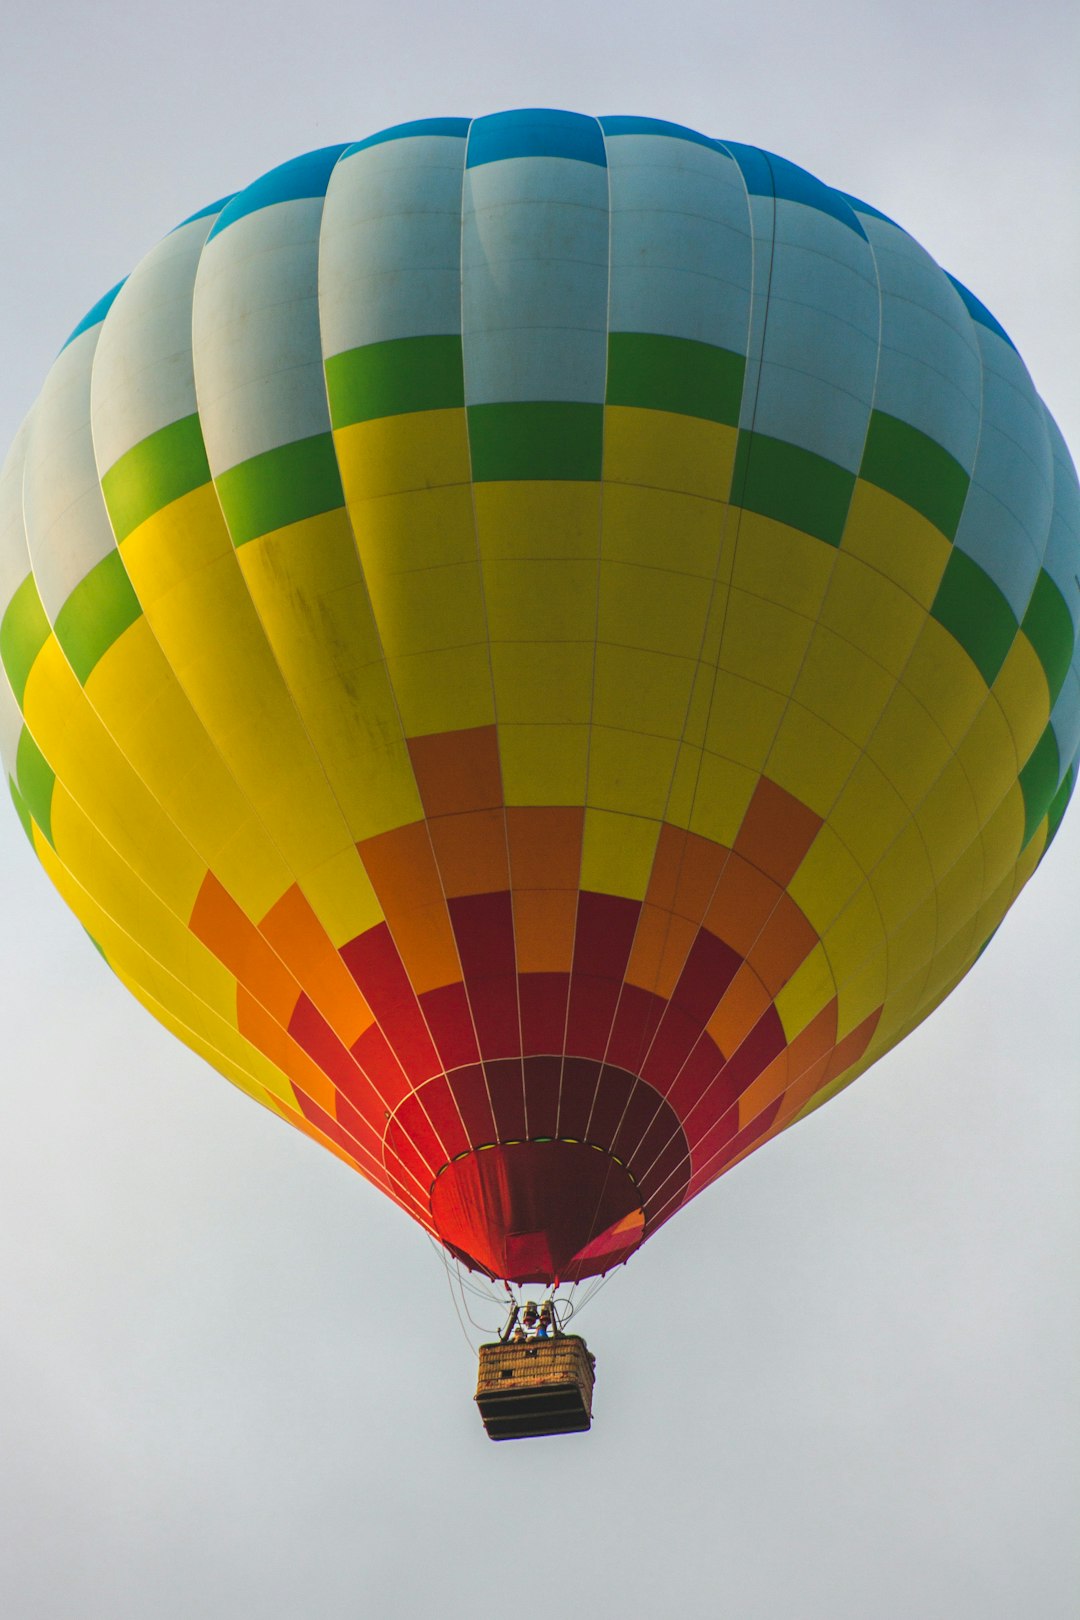 Hot air ballooning photo spot Omaha United States